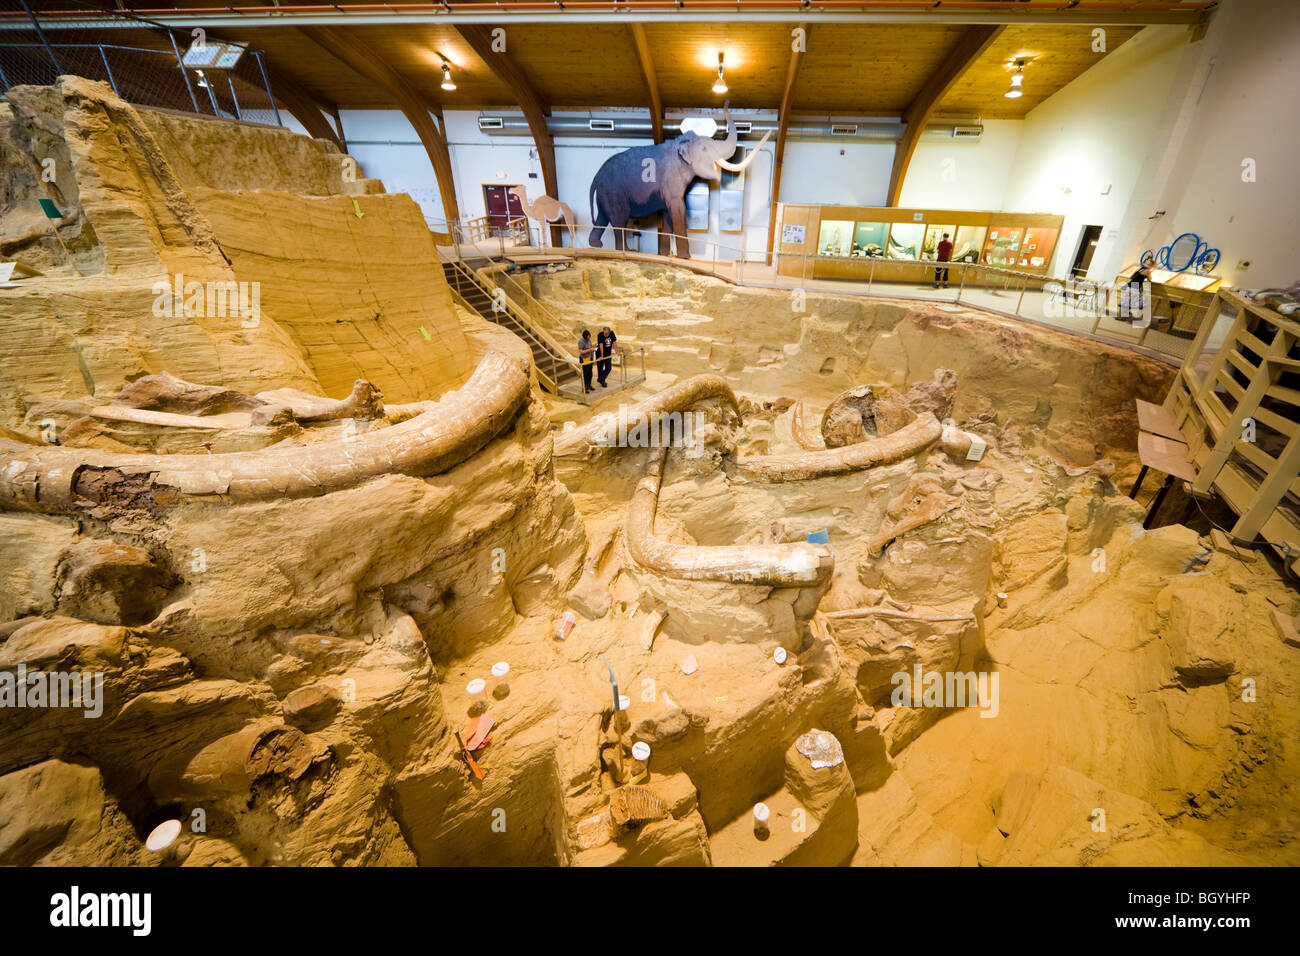 El museo de sitio, Mammoth Hot Springs SD. Visitantes que buscan en el bonebed con huesos de mamut colmillos fósiles en paleontología dig. Foto de stock